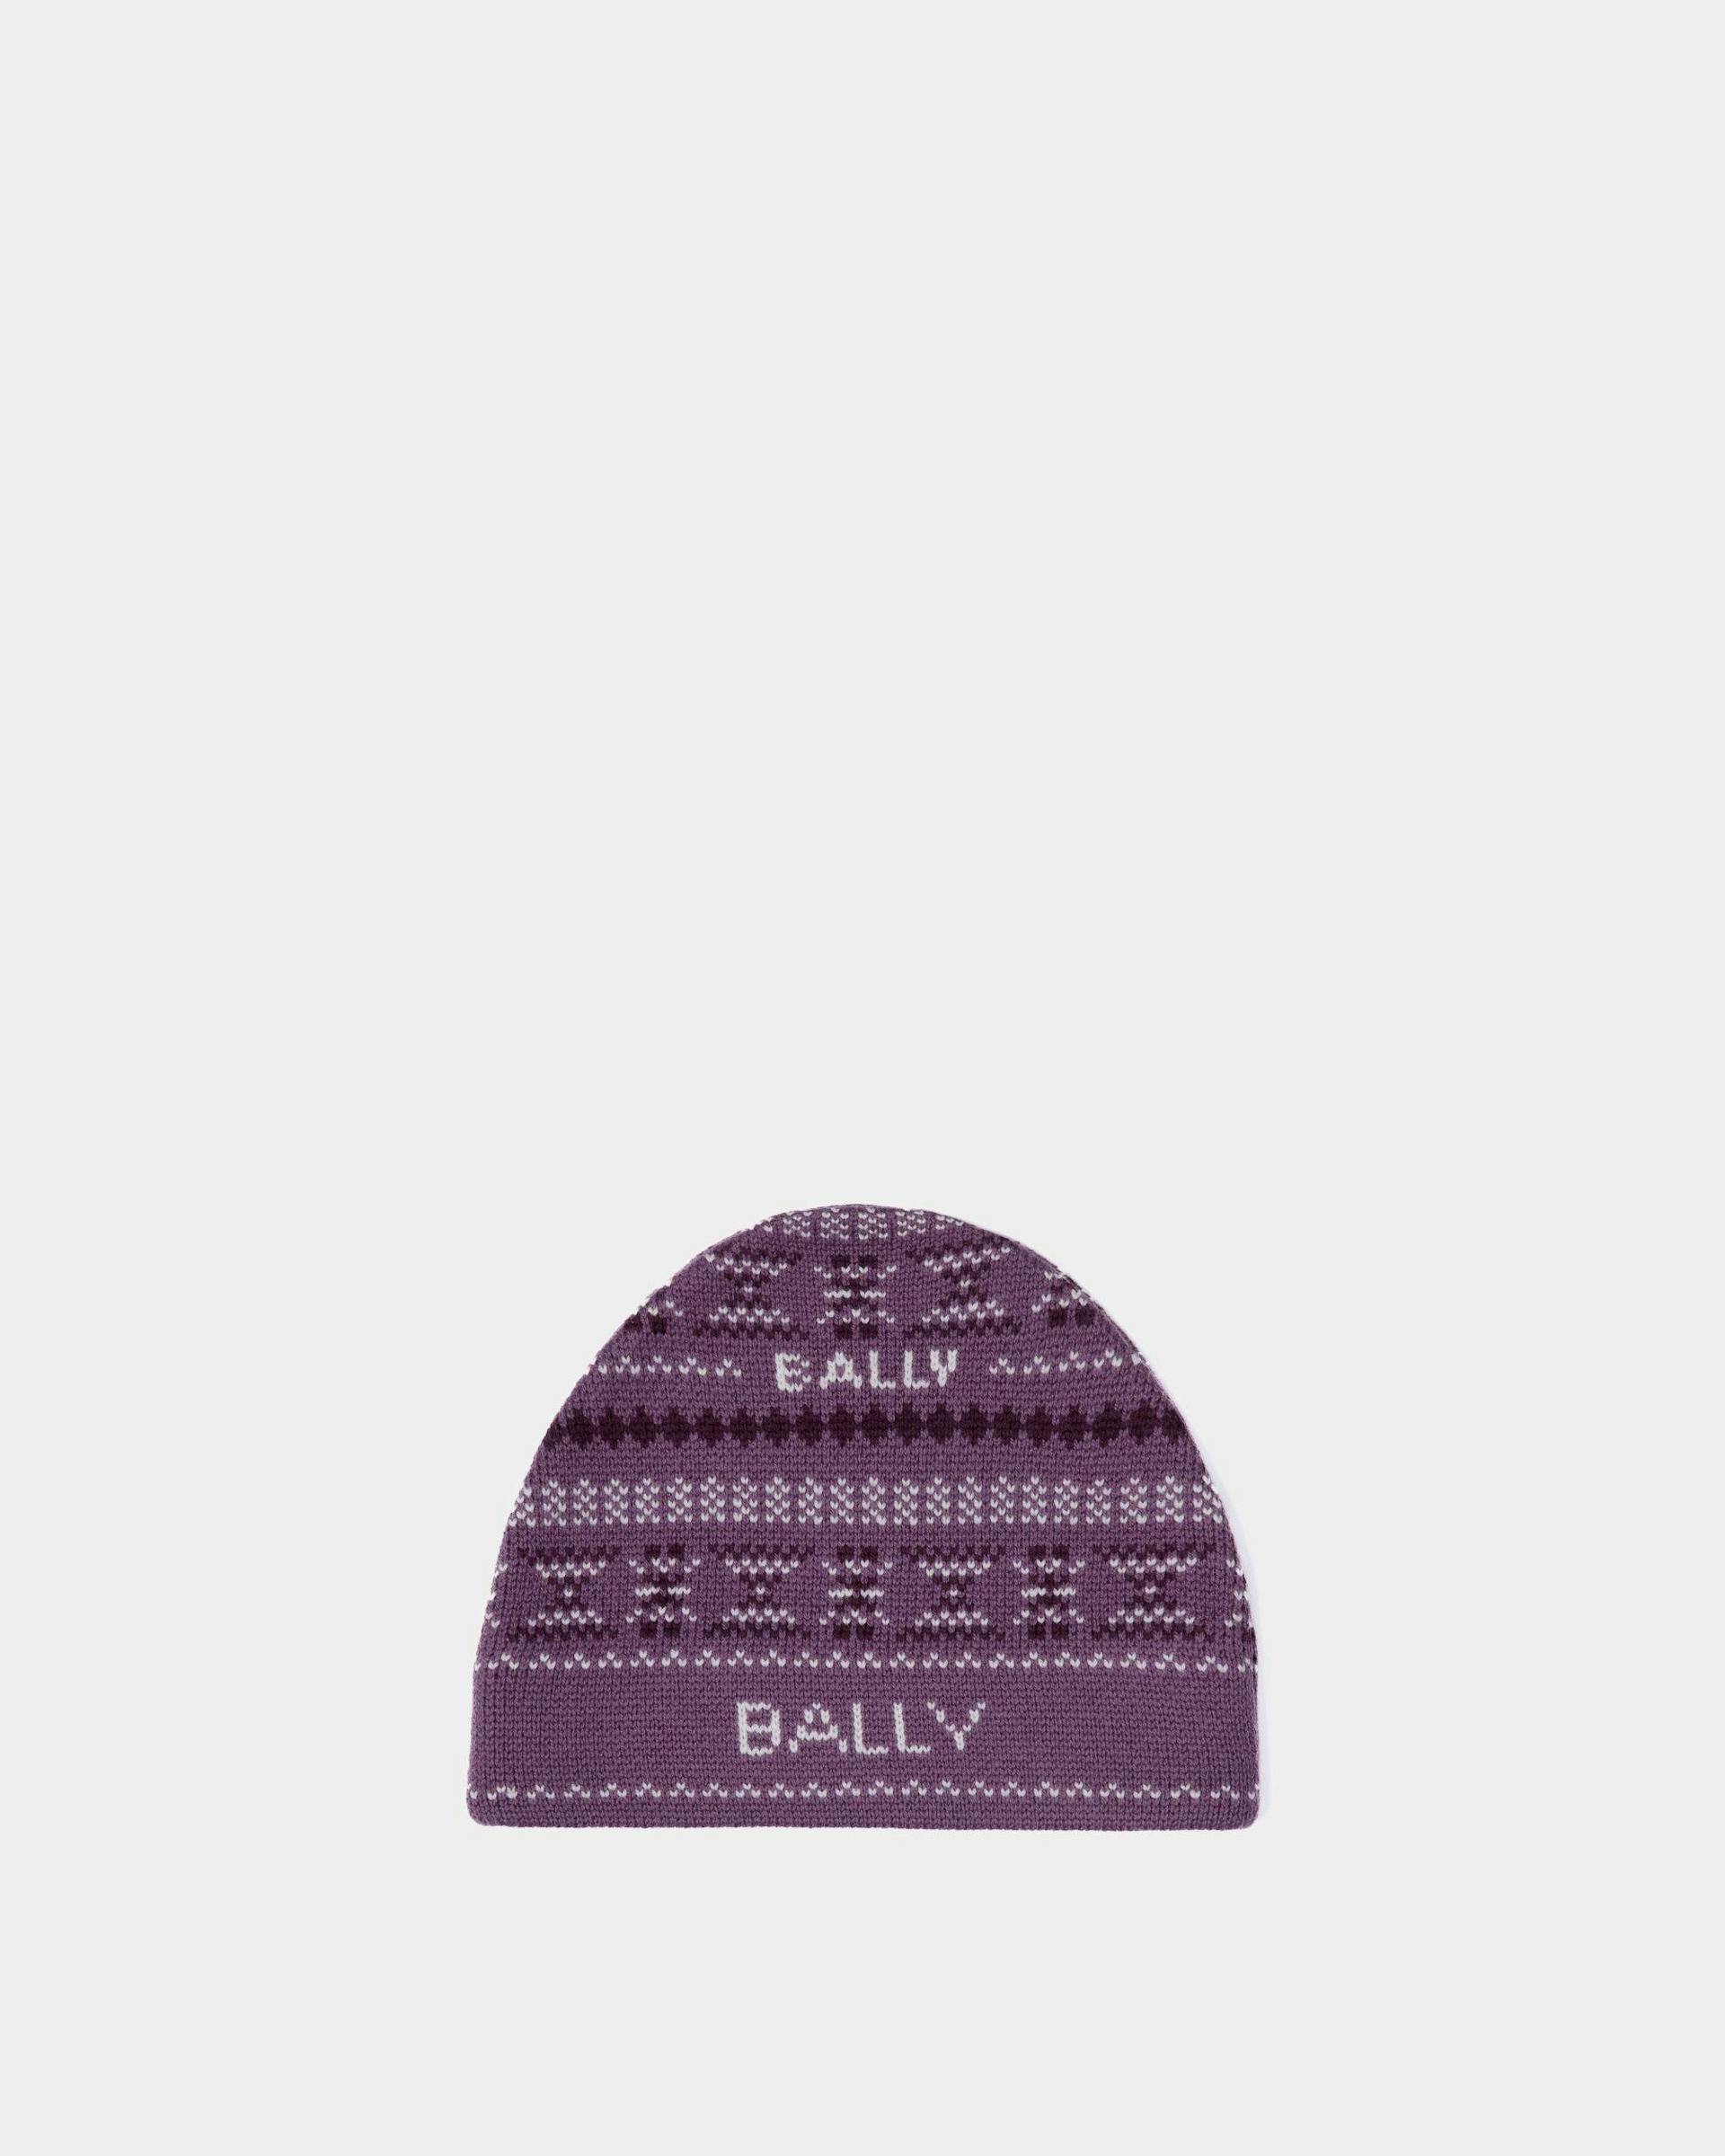 Women's Beanie In Purple Wool | Bally | Still Life Front